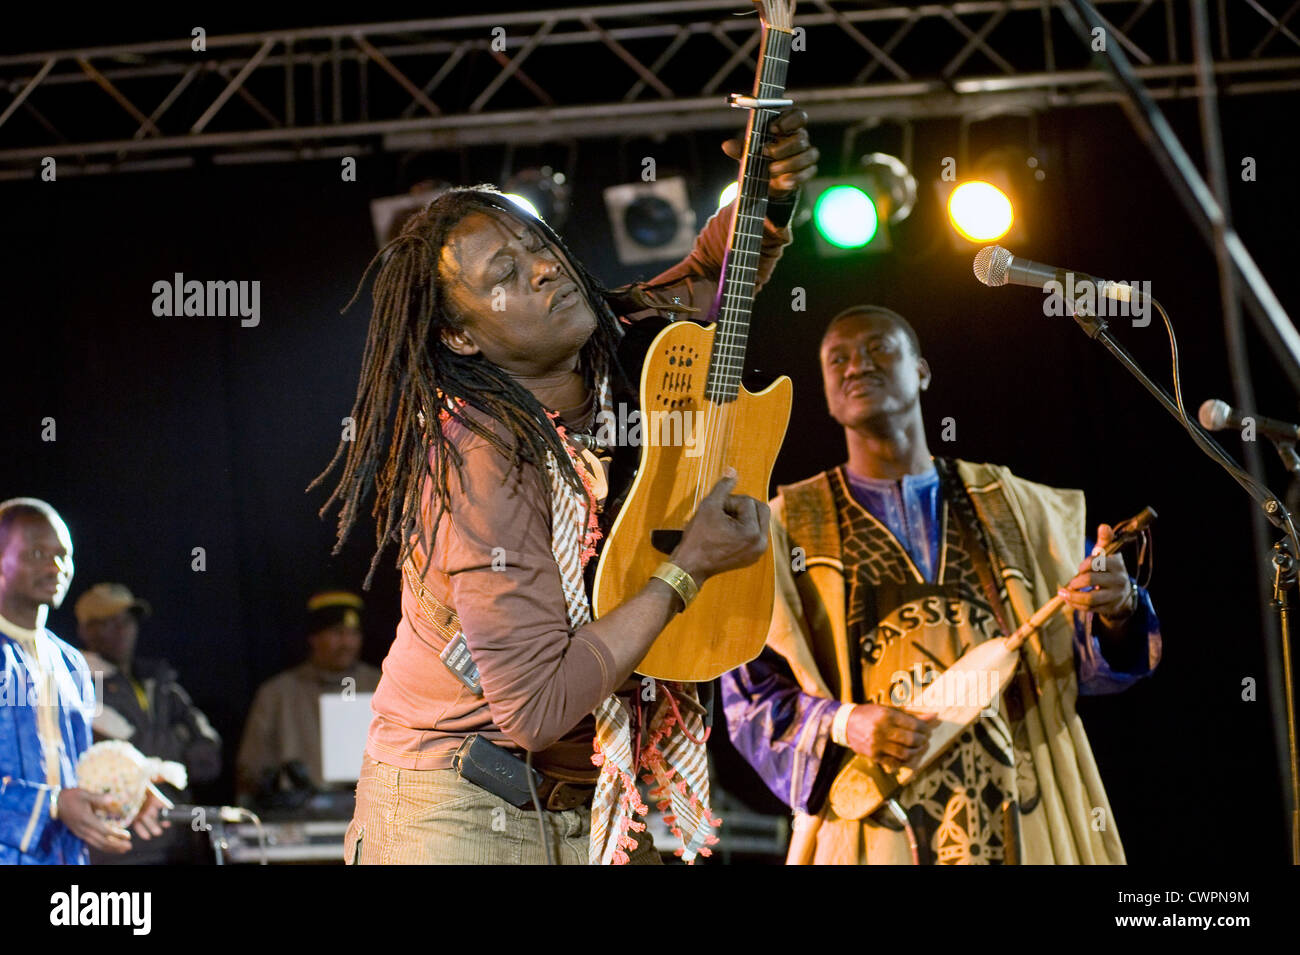 Malian musician Habib Koite on stage with Bassekou Kouyate at the 'festival au Desert' near Timbuktu, Mali Stock Photo